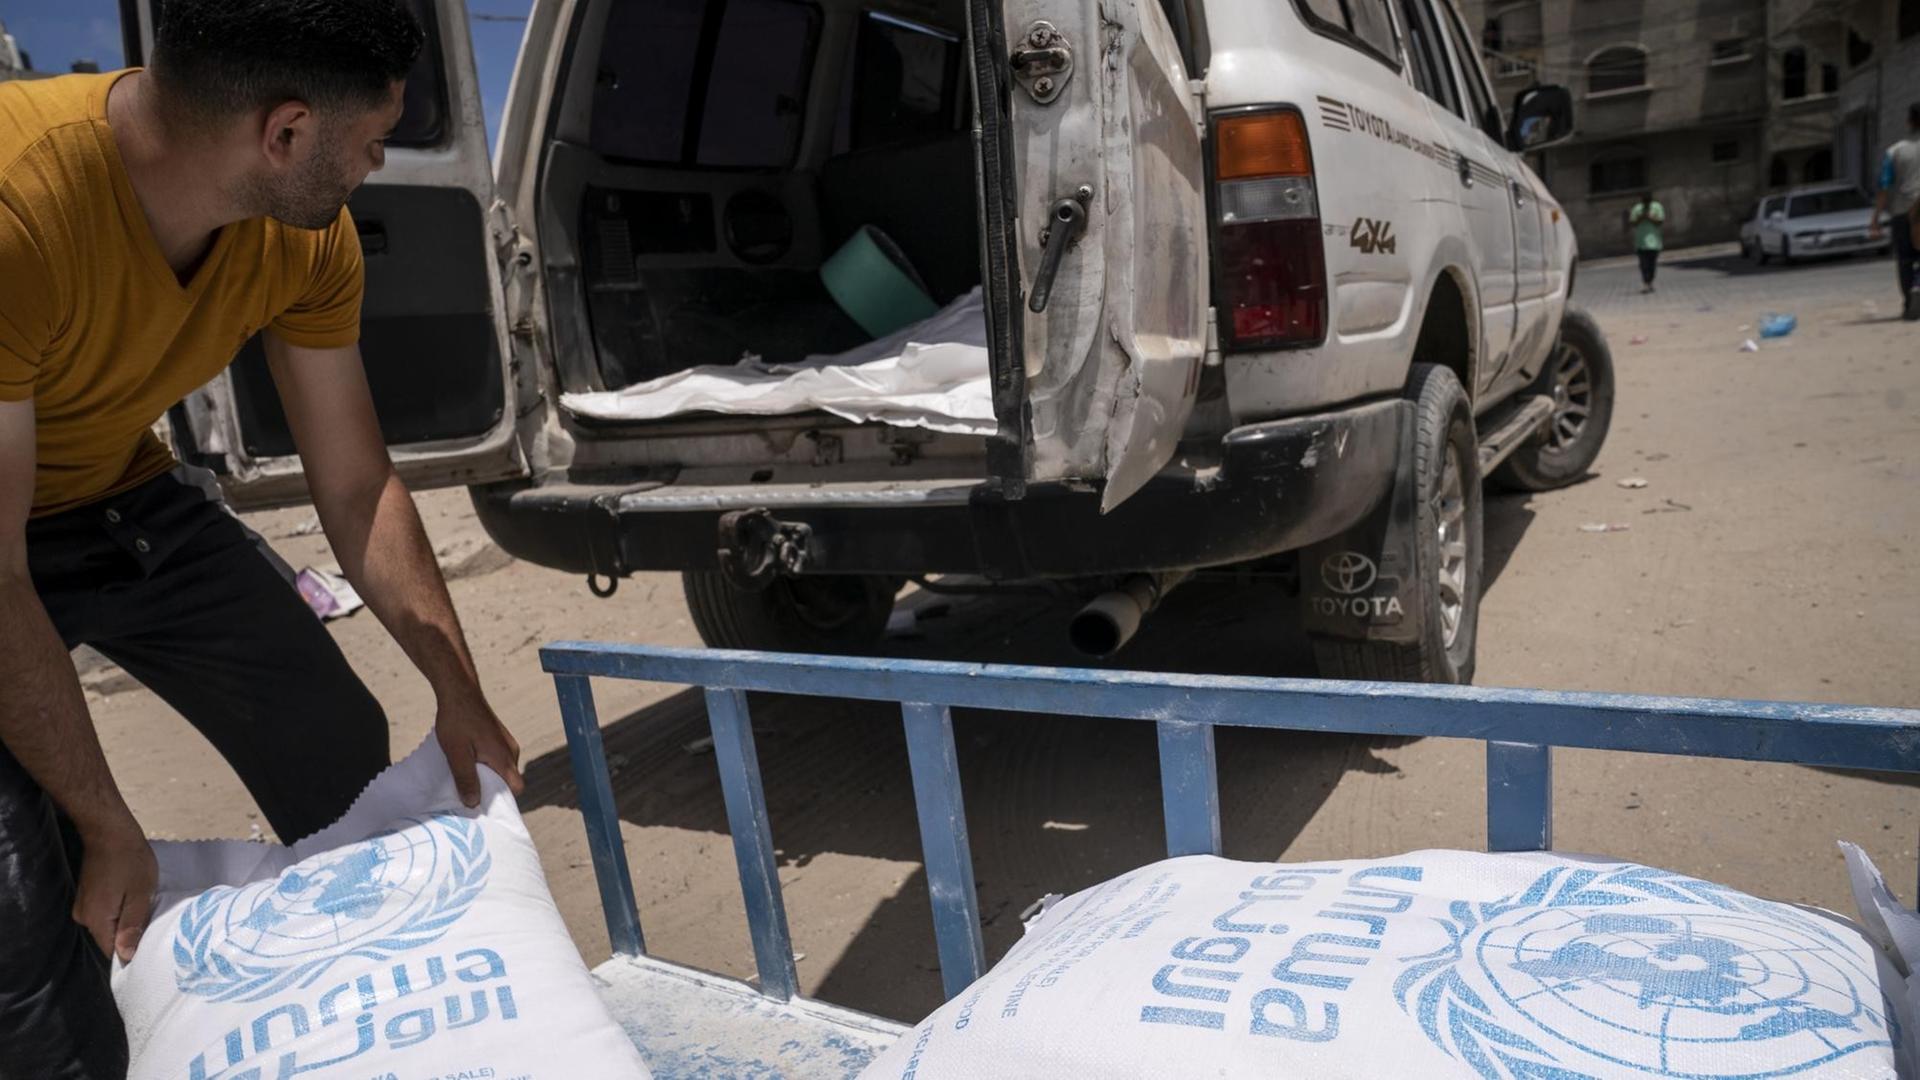 Palästinensische Autonomiegebiete, Gaza: Säcke mit Lebensmitteln der Vereinten Nationen werden auf einen Anhänger geladen.